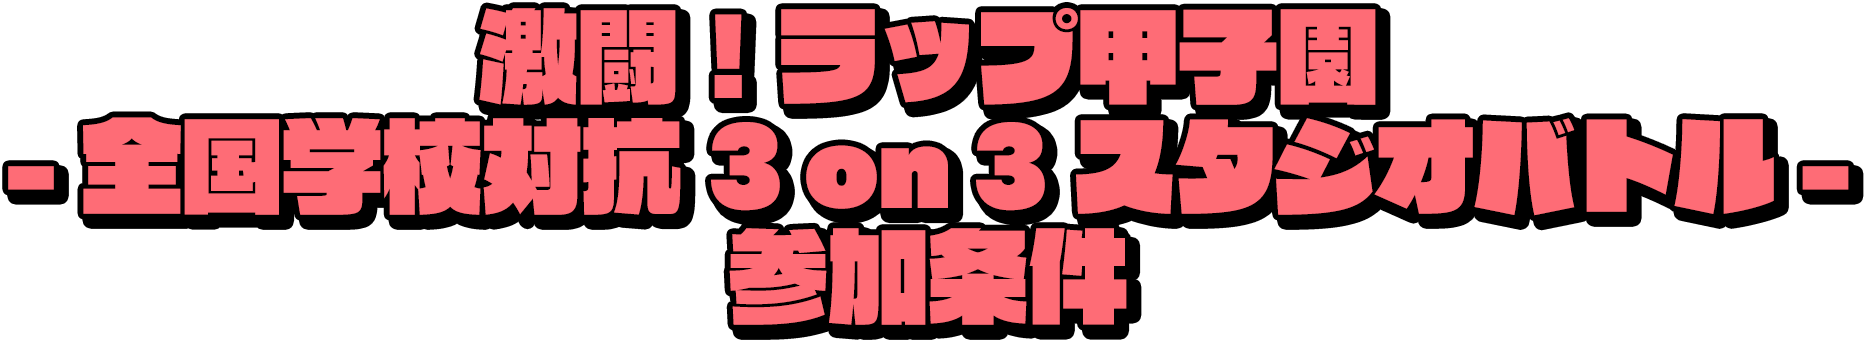 激闘！ラップ甲子園 全国学校対抗 3on3 スタジオバトル 参加条件